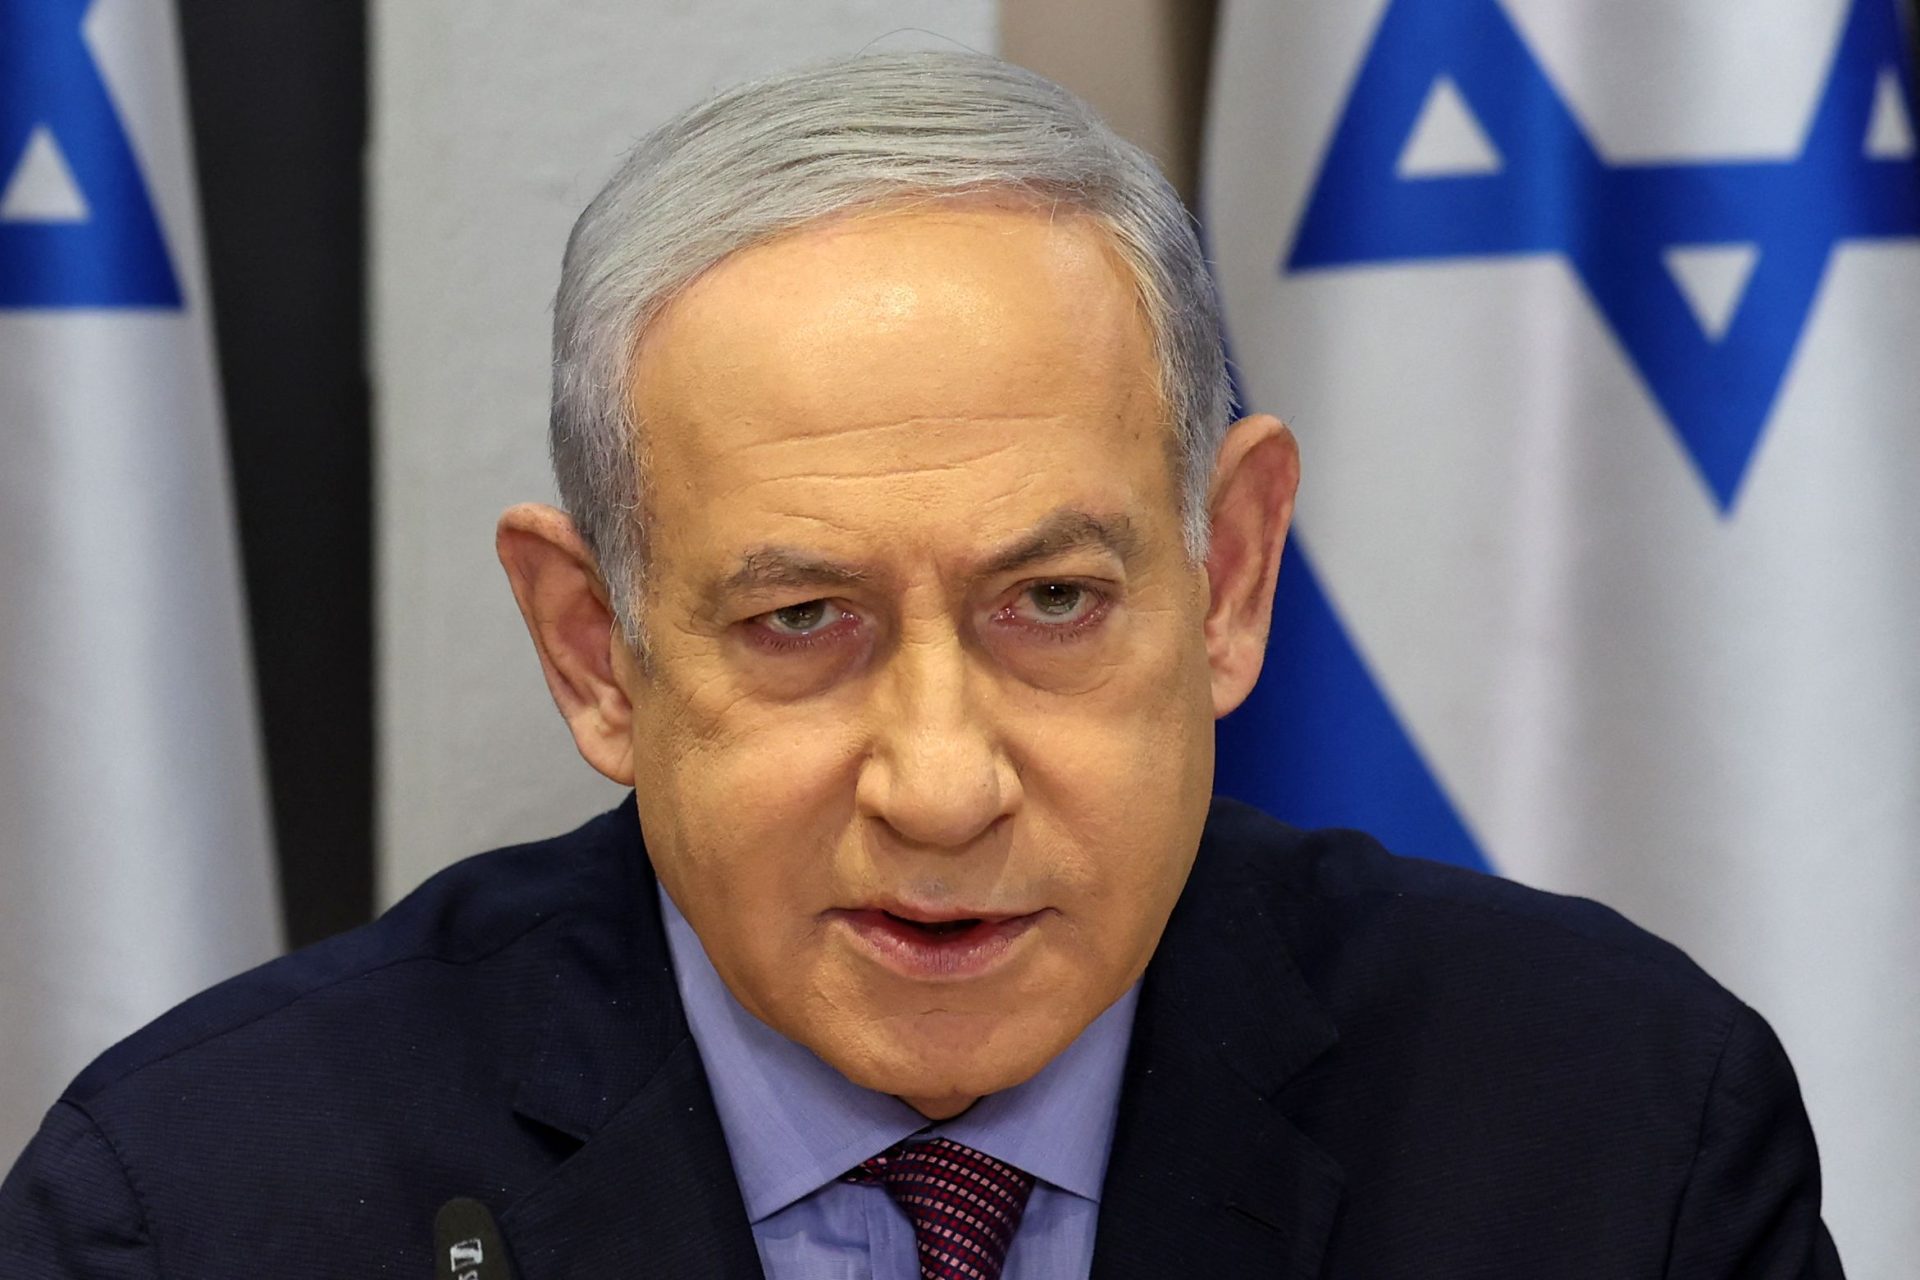 Ambulance secrète dans le cortège de Netanyahu, révèlent les médias israéliens